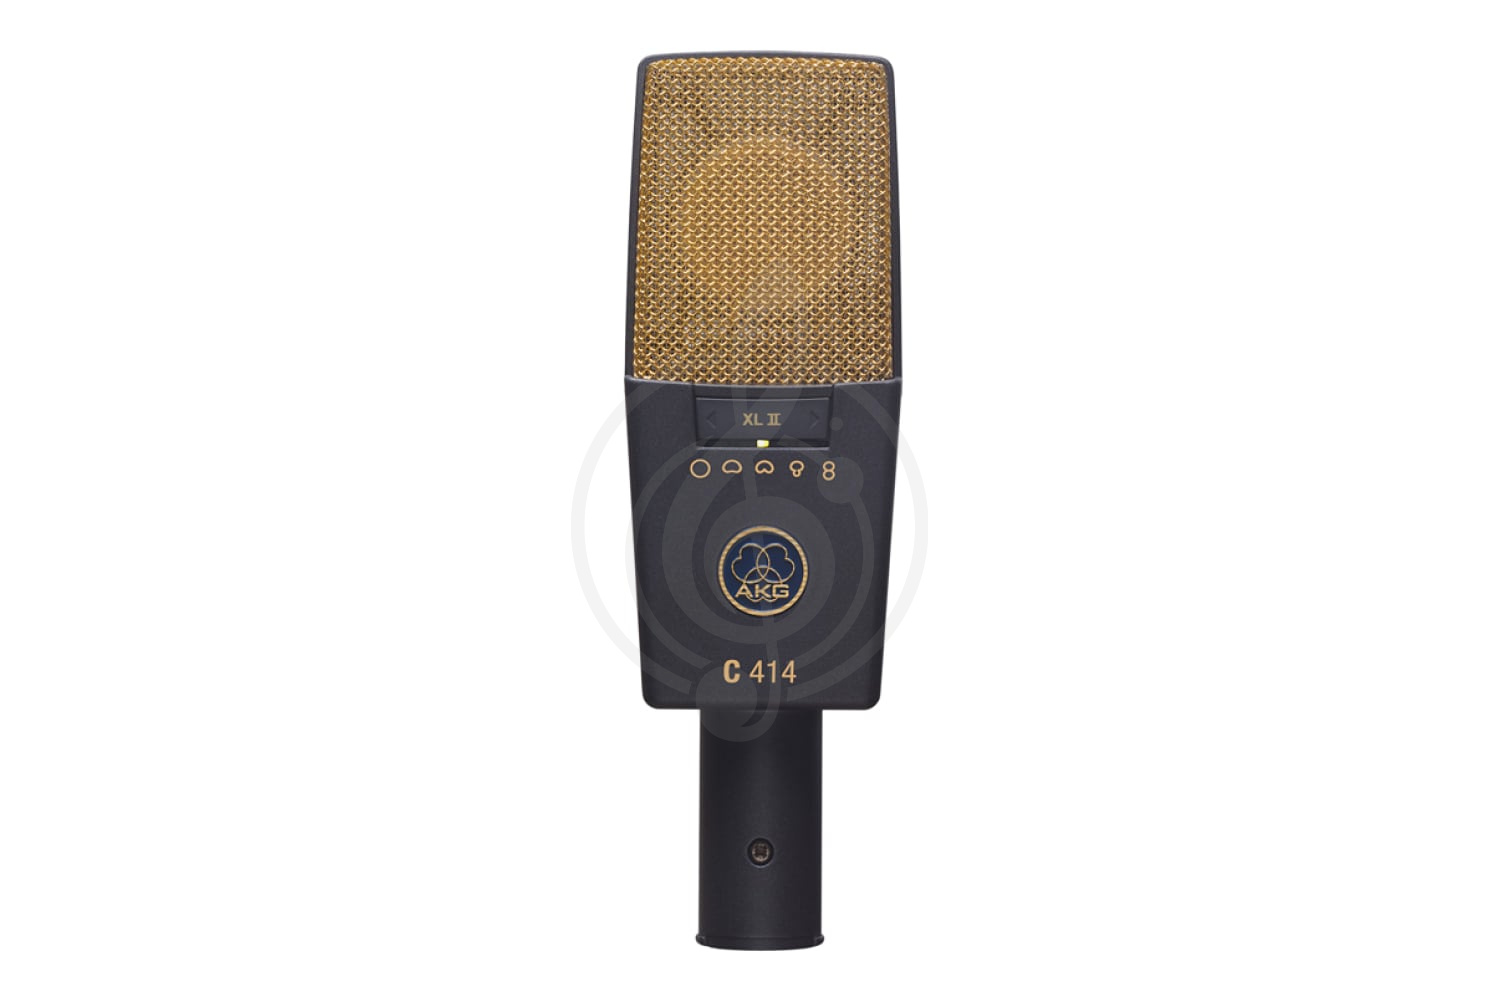 Конденсаторный студийный микрофон Конденсаторные студийные микрофоны AKG AKG C414XLII - конденсаторный студийный микрофон C414XLII - фото 1